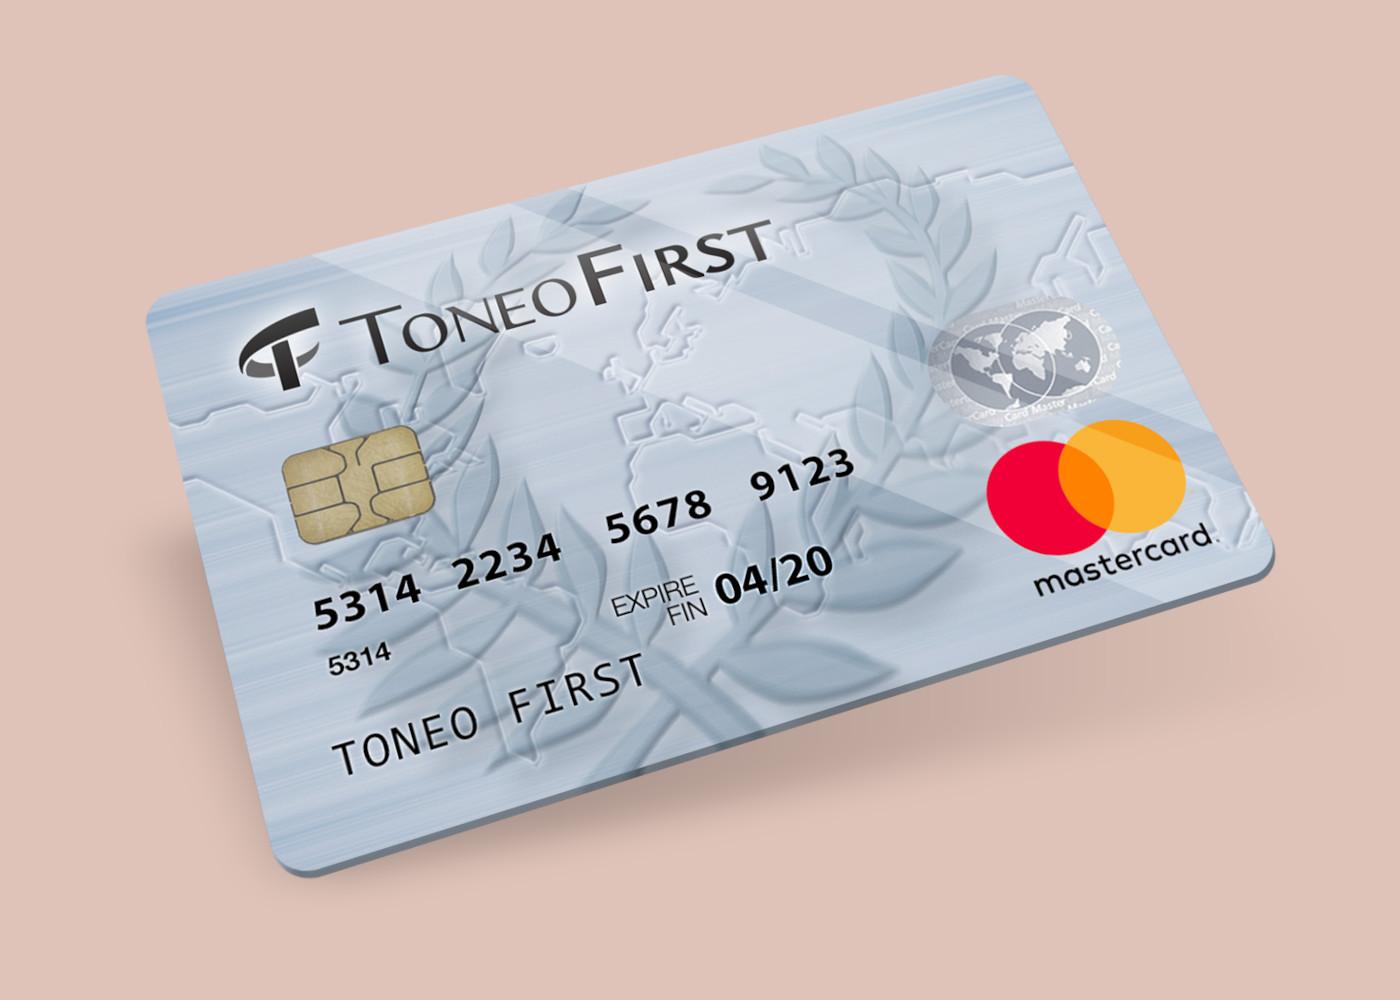 Toneo First Mastercard €15 Gift Card EU [$ 19.63]